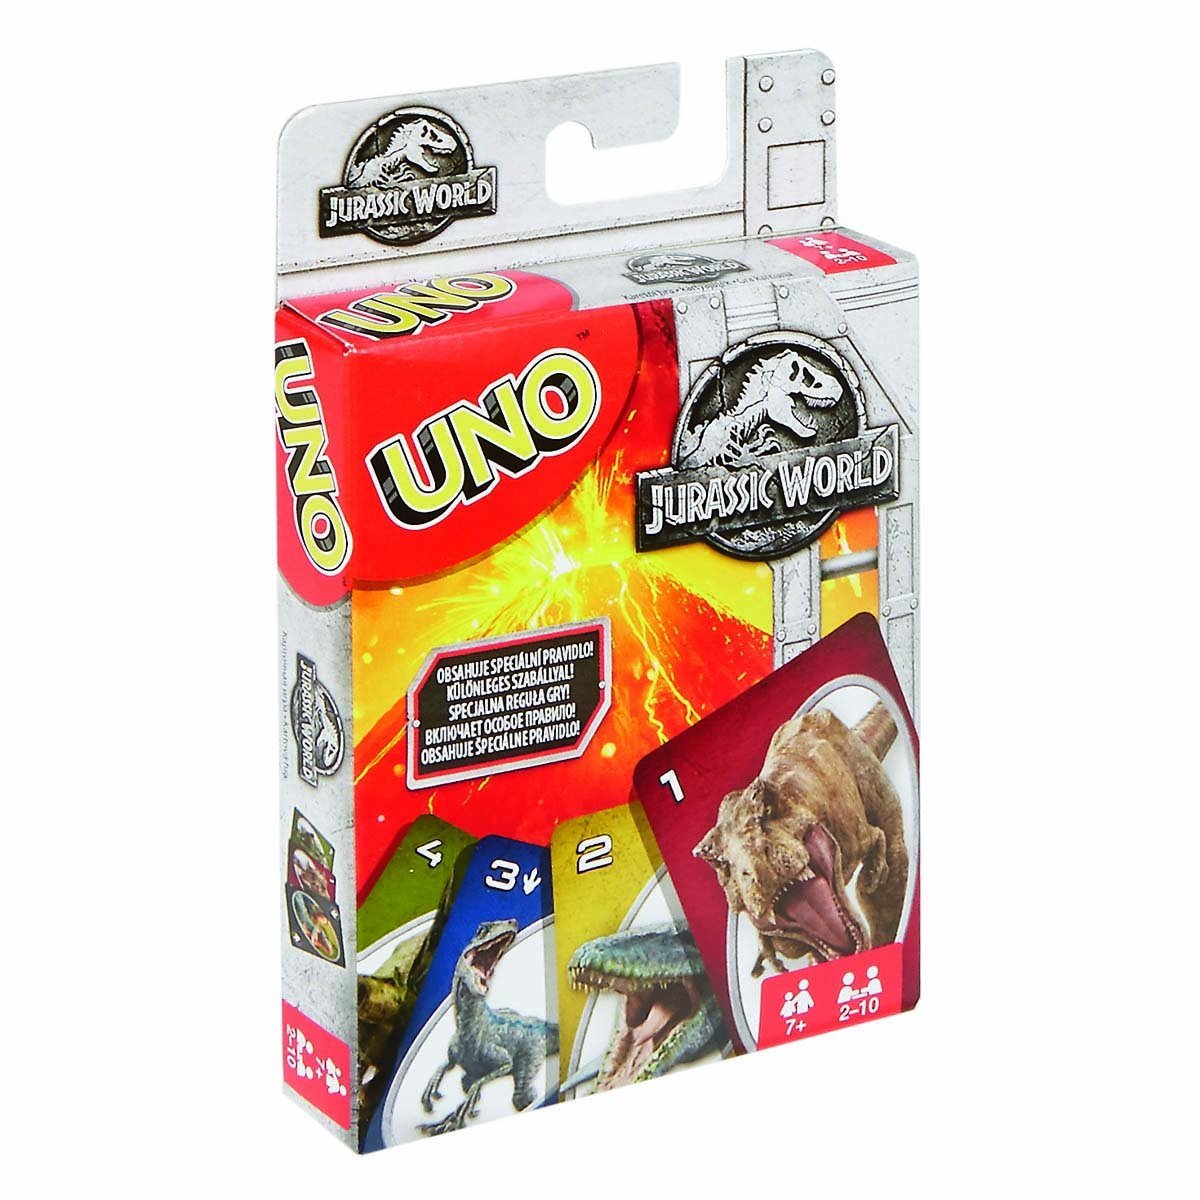 Uno Cartas Jurassic World Mattel